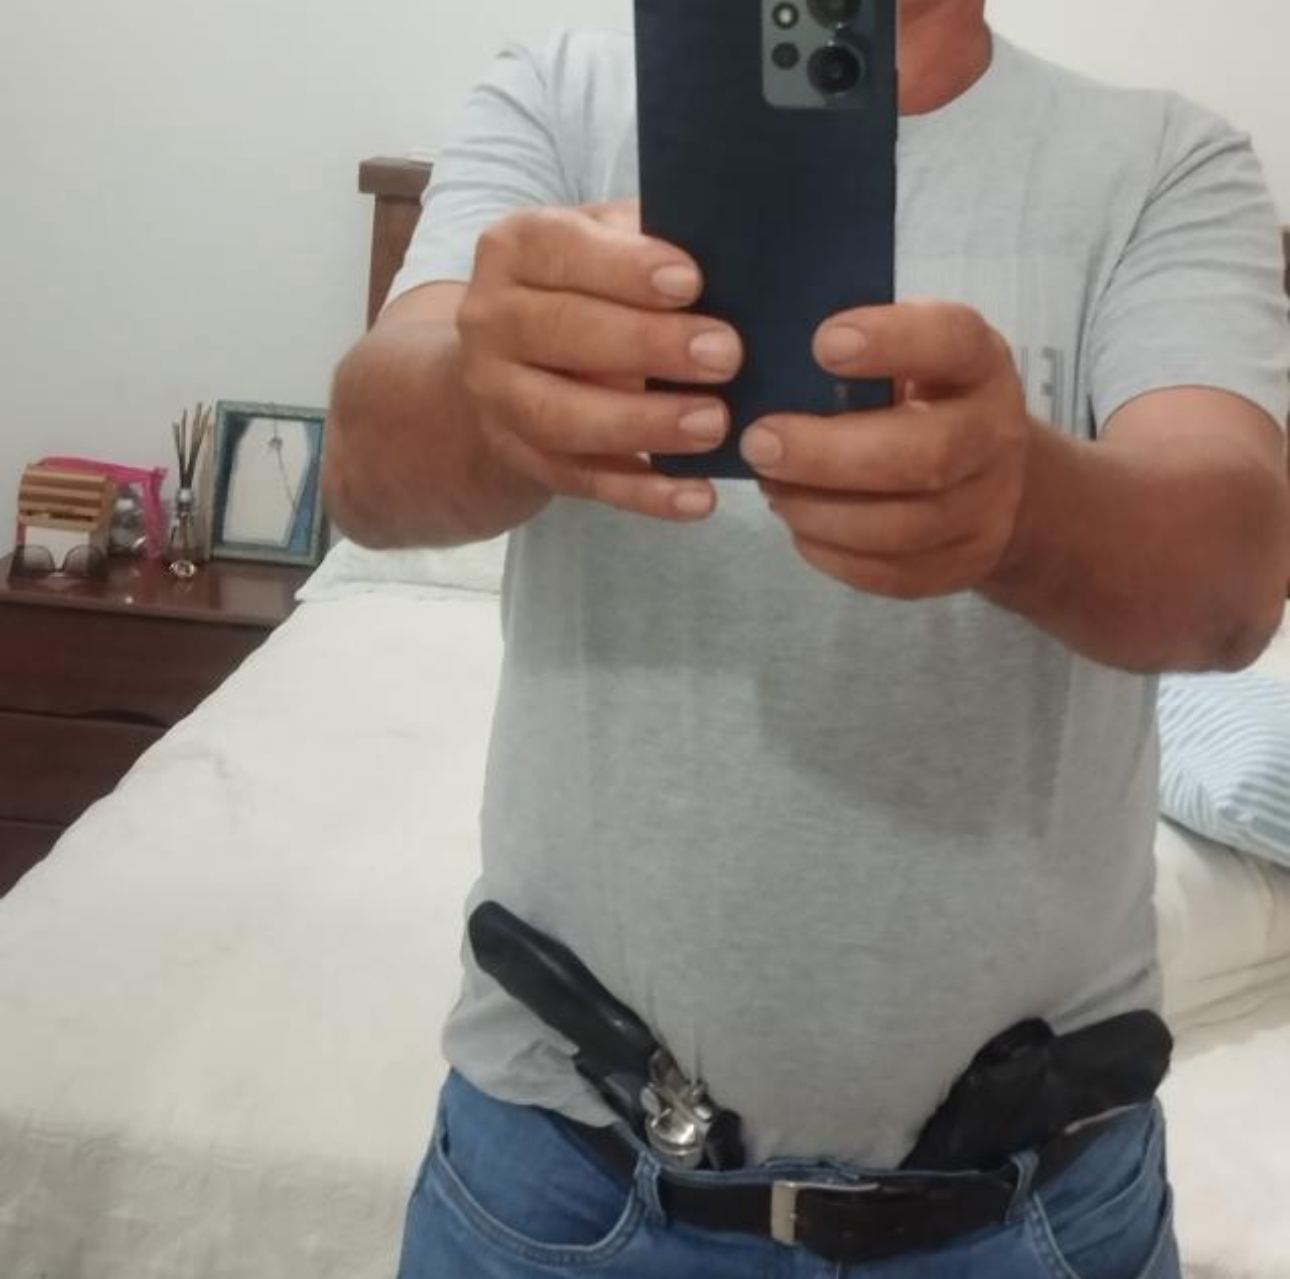 Presidente do PSB de Malacacheta posta foto portando armas em seu perfil nas redes sociais